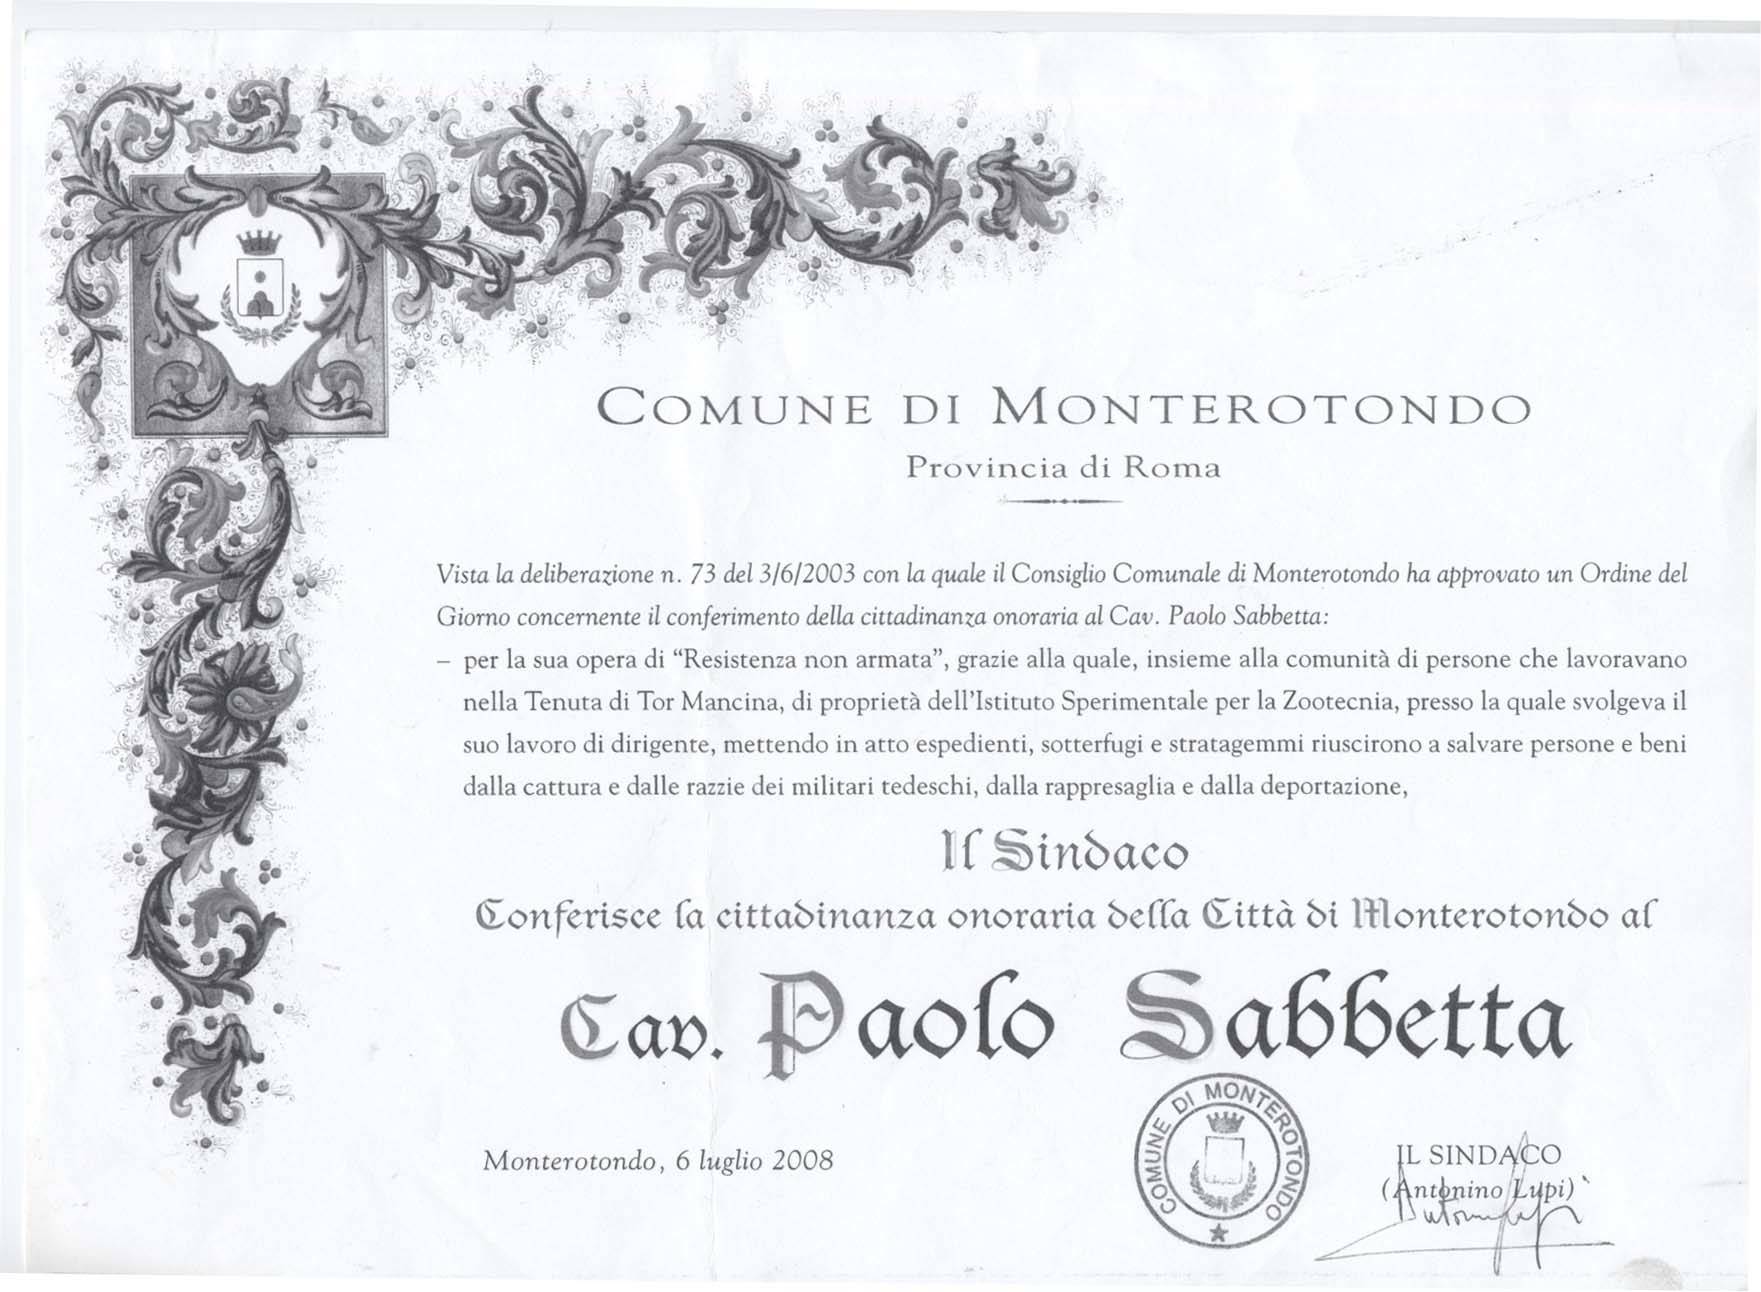 6 Luglio 2008 Cittadinanza onoraria rilasciata a Sabbetta  dal Comune di Monterotondo (Riconoscimenti di Paolo Sabbetta)